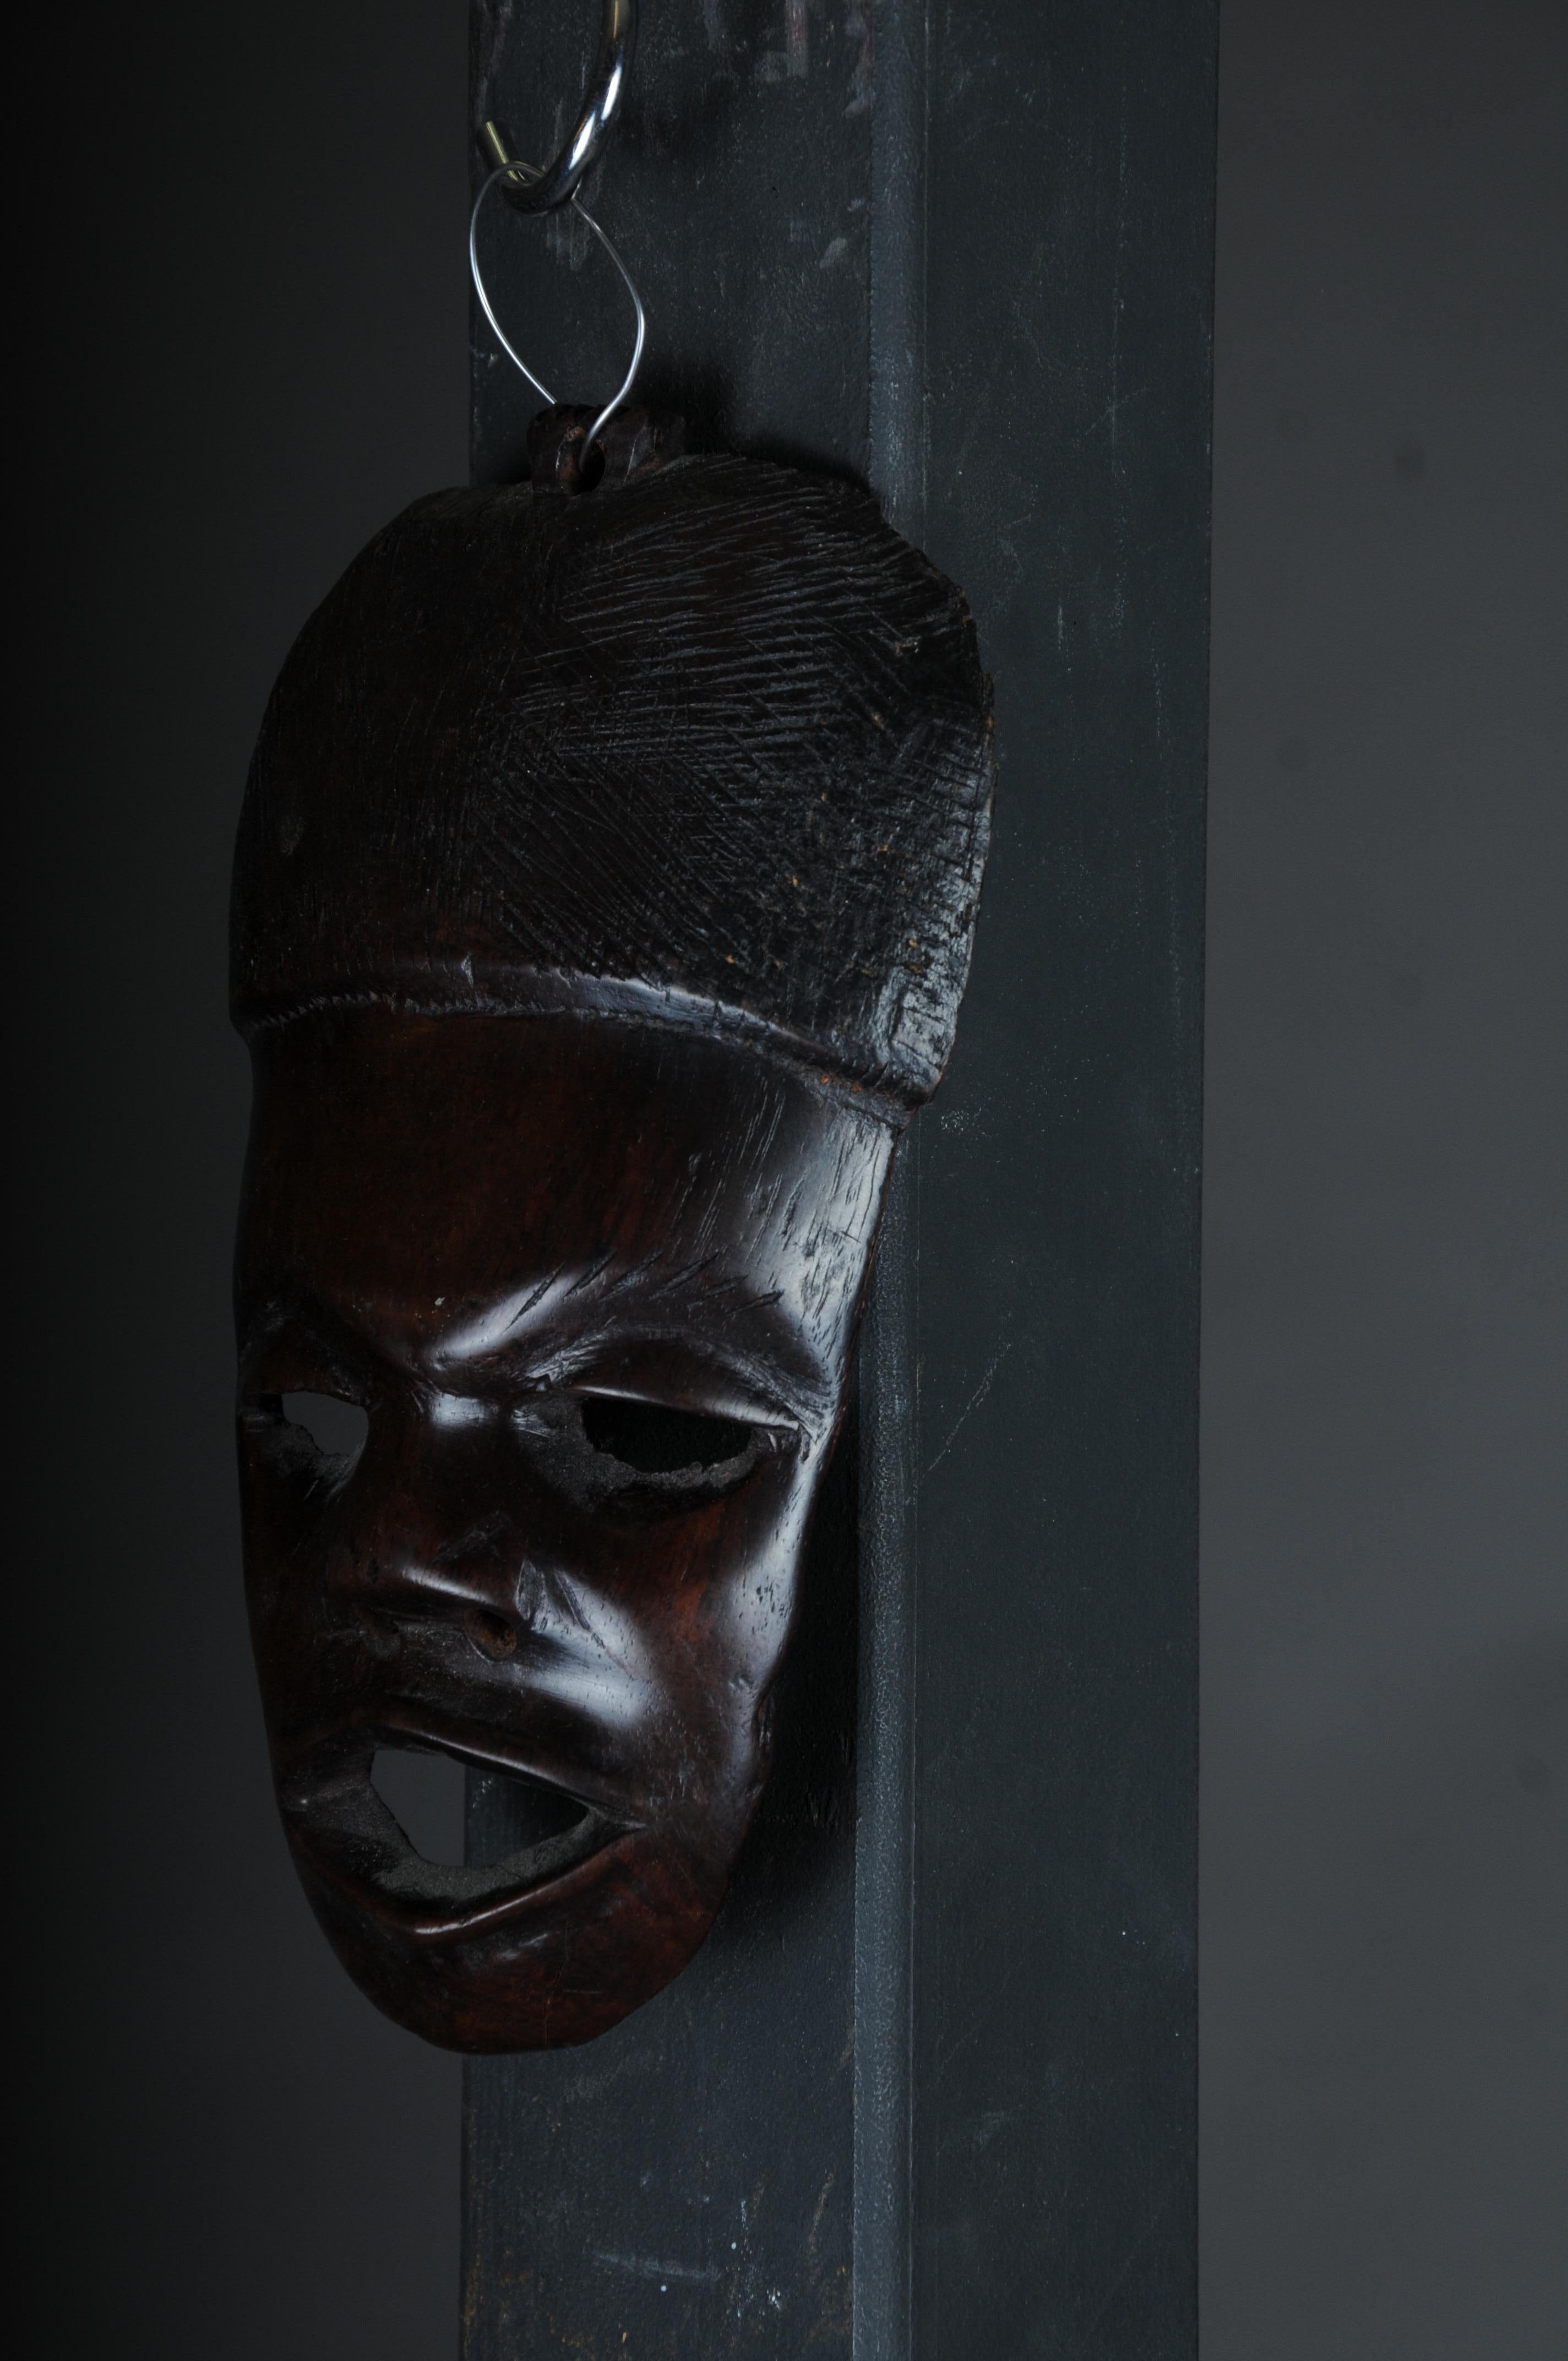 Masque en bois sculpté du 20e siècle, art africain

Bois massif, sculpté à la main, Afrique probablement siècle

Très décoratif. Provient d'une collection privée berlinoise.